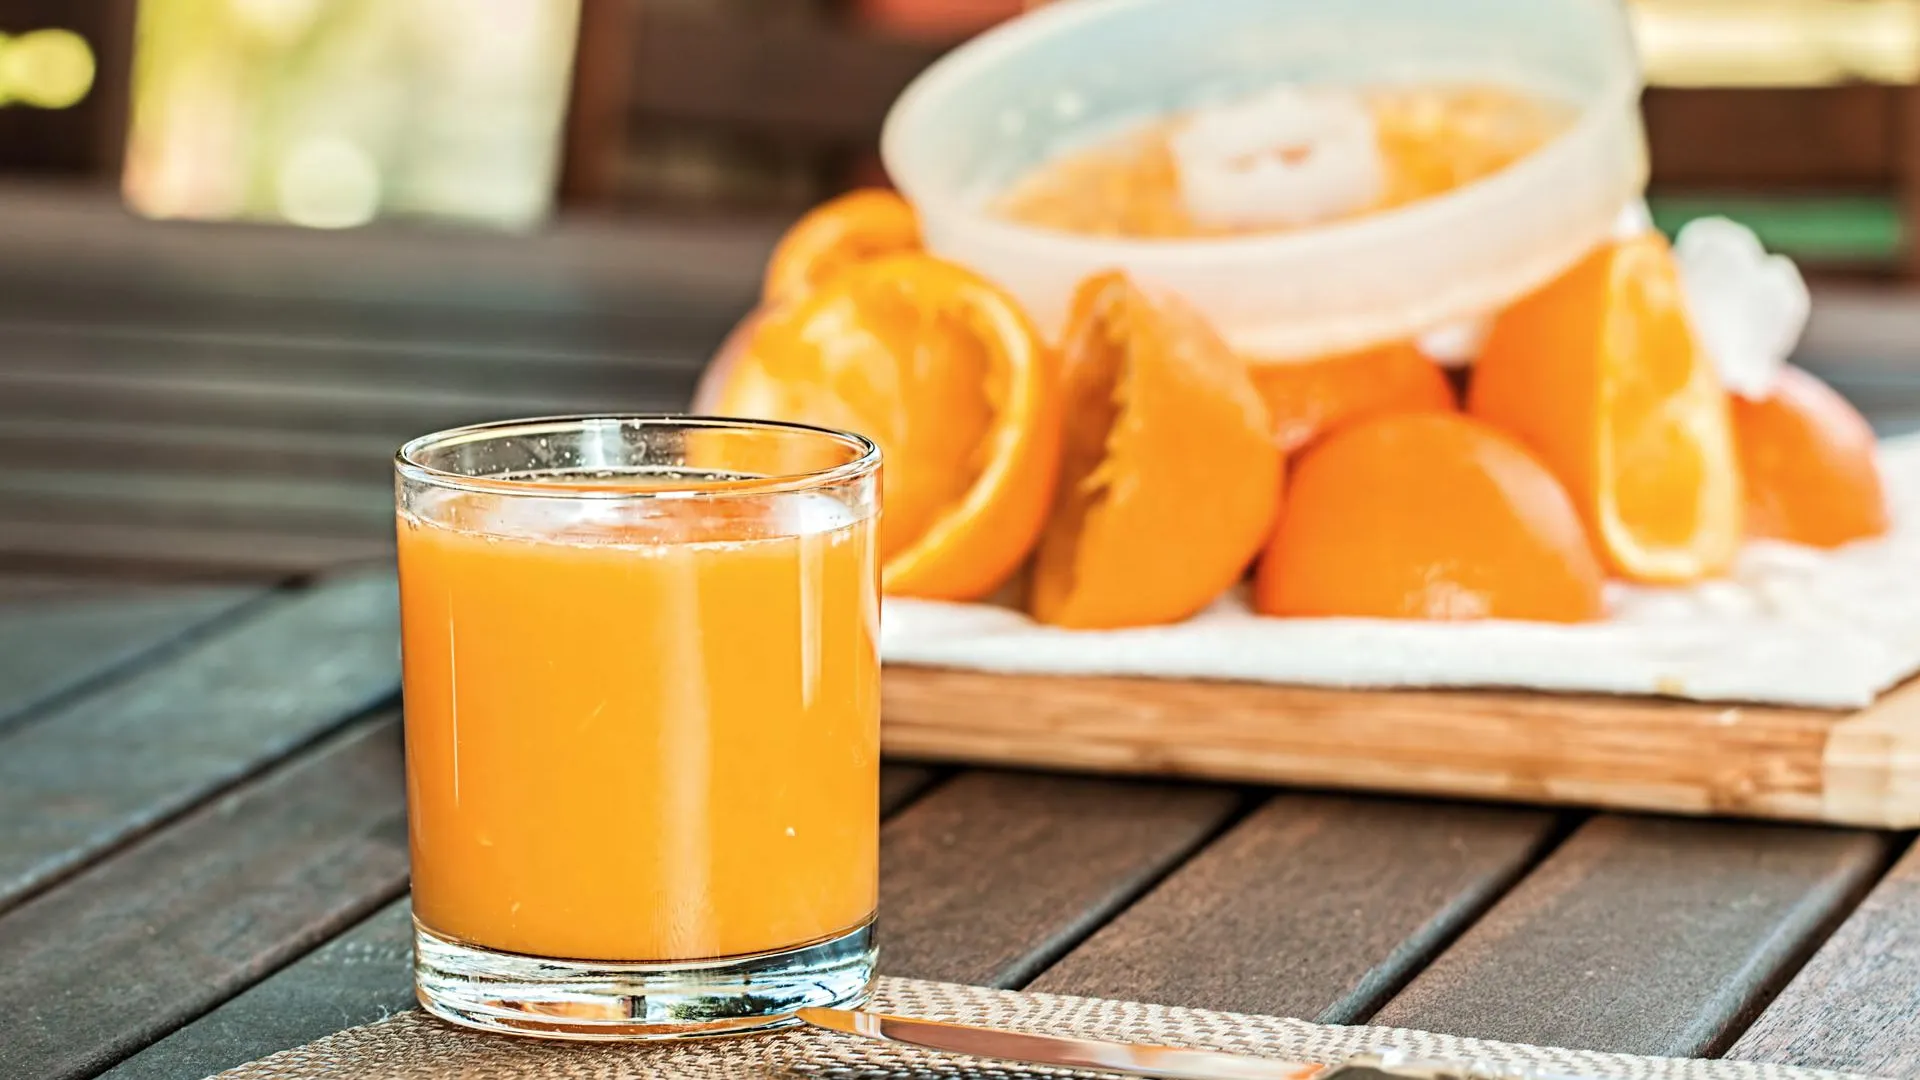 Эксперт Быстров заявил, что апельсиновым соком нельзя запивать лекарственные препараты